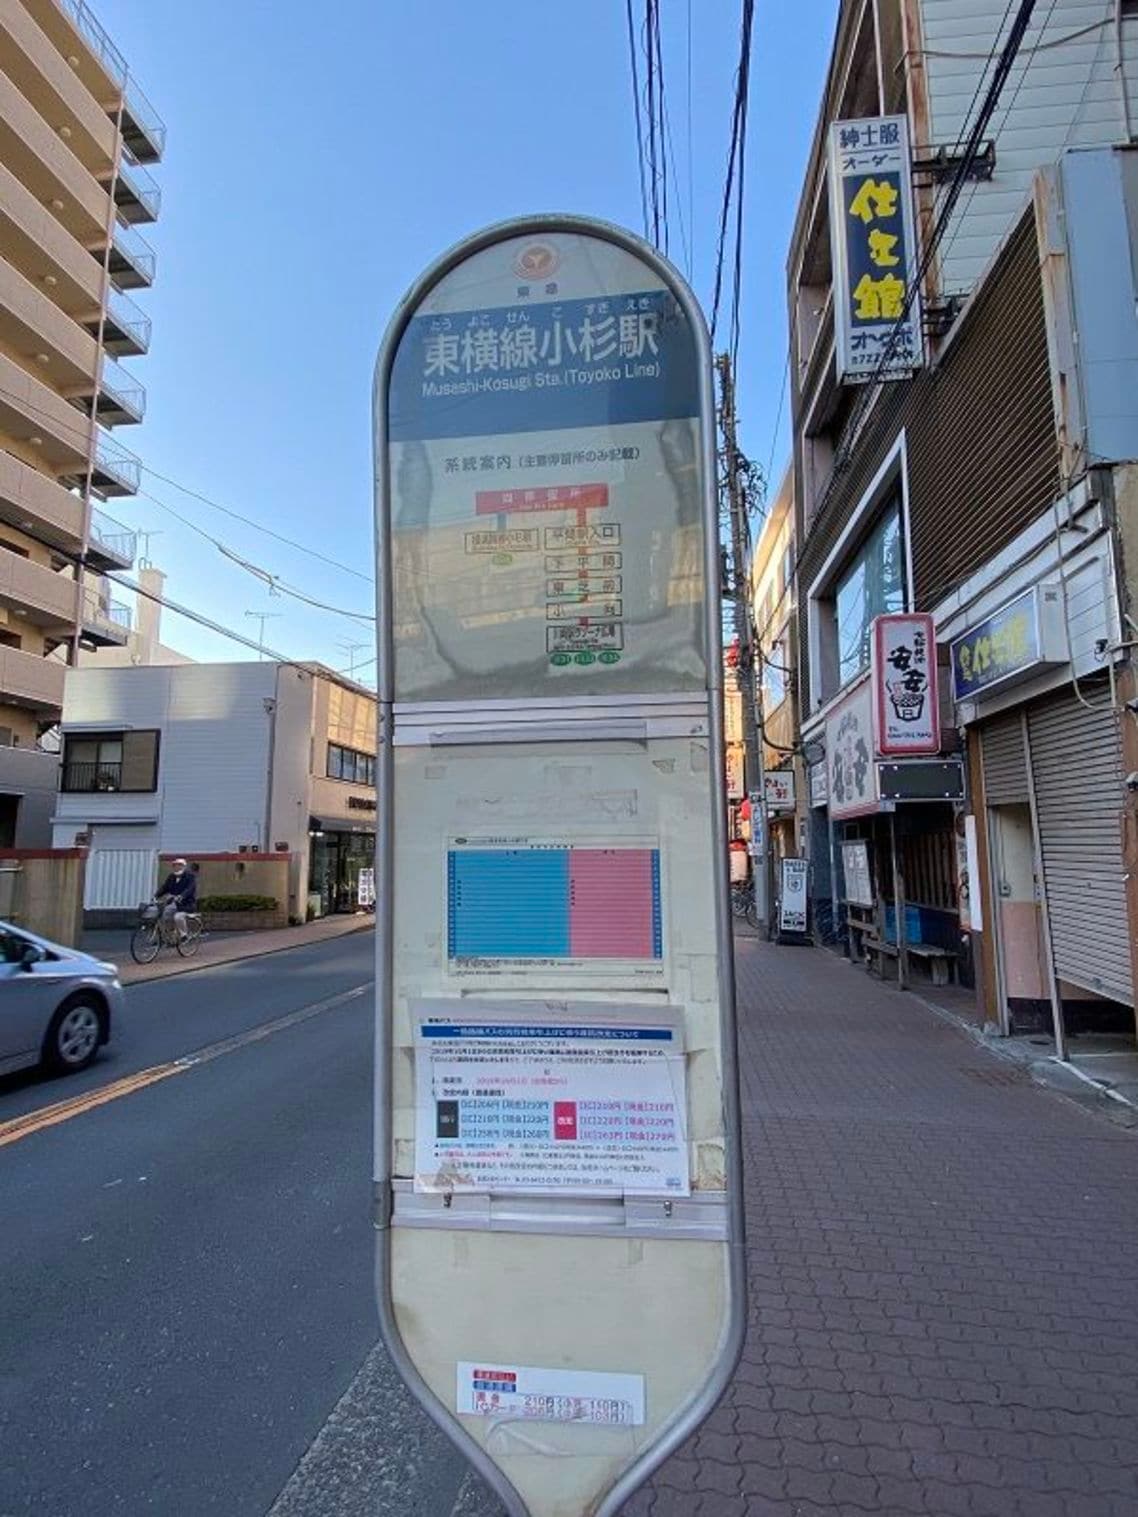 「東横線小杉駅」と表示されているバス停